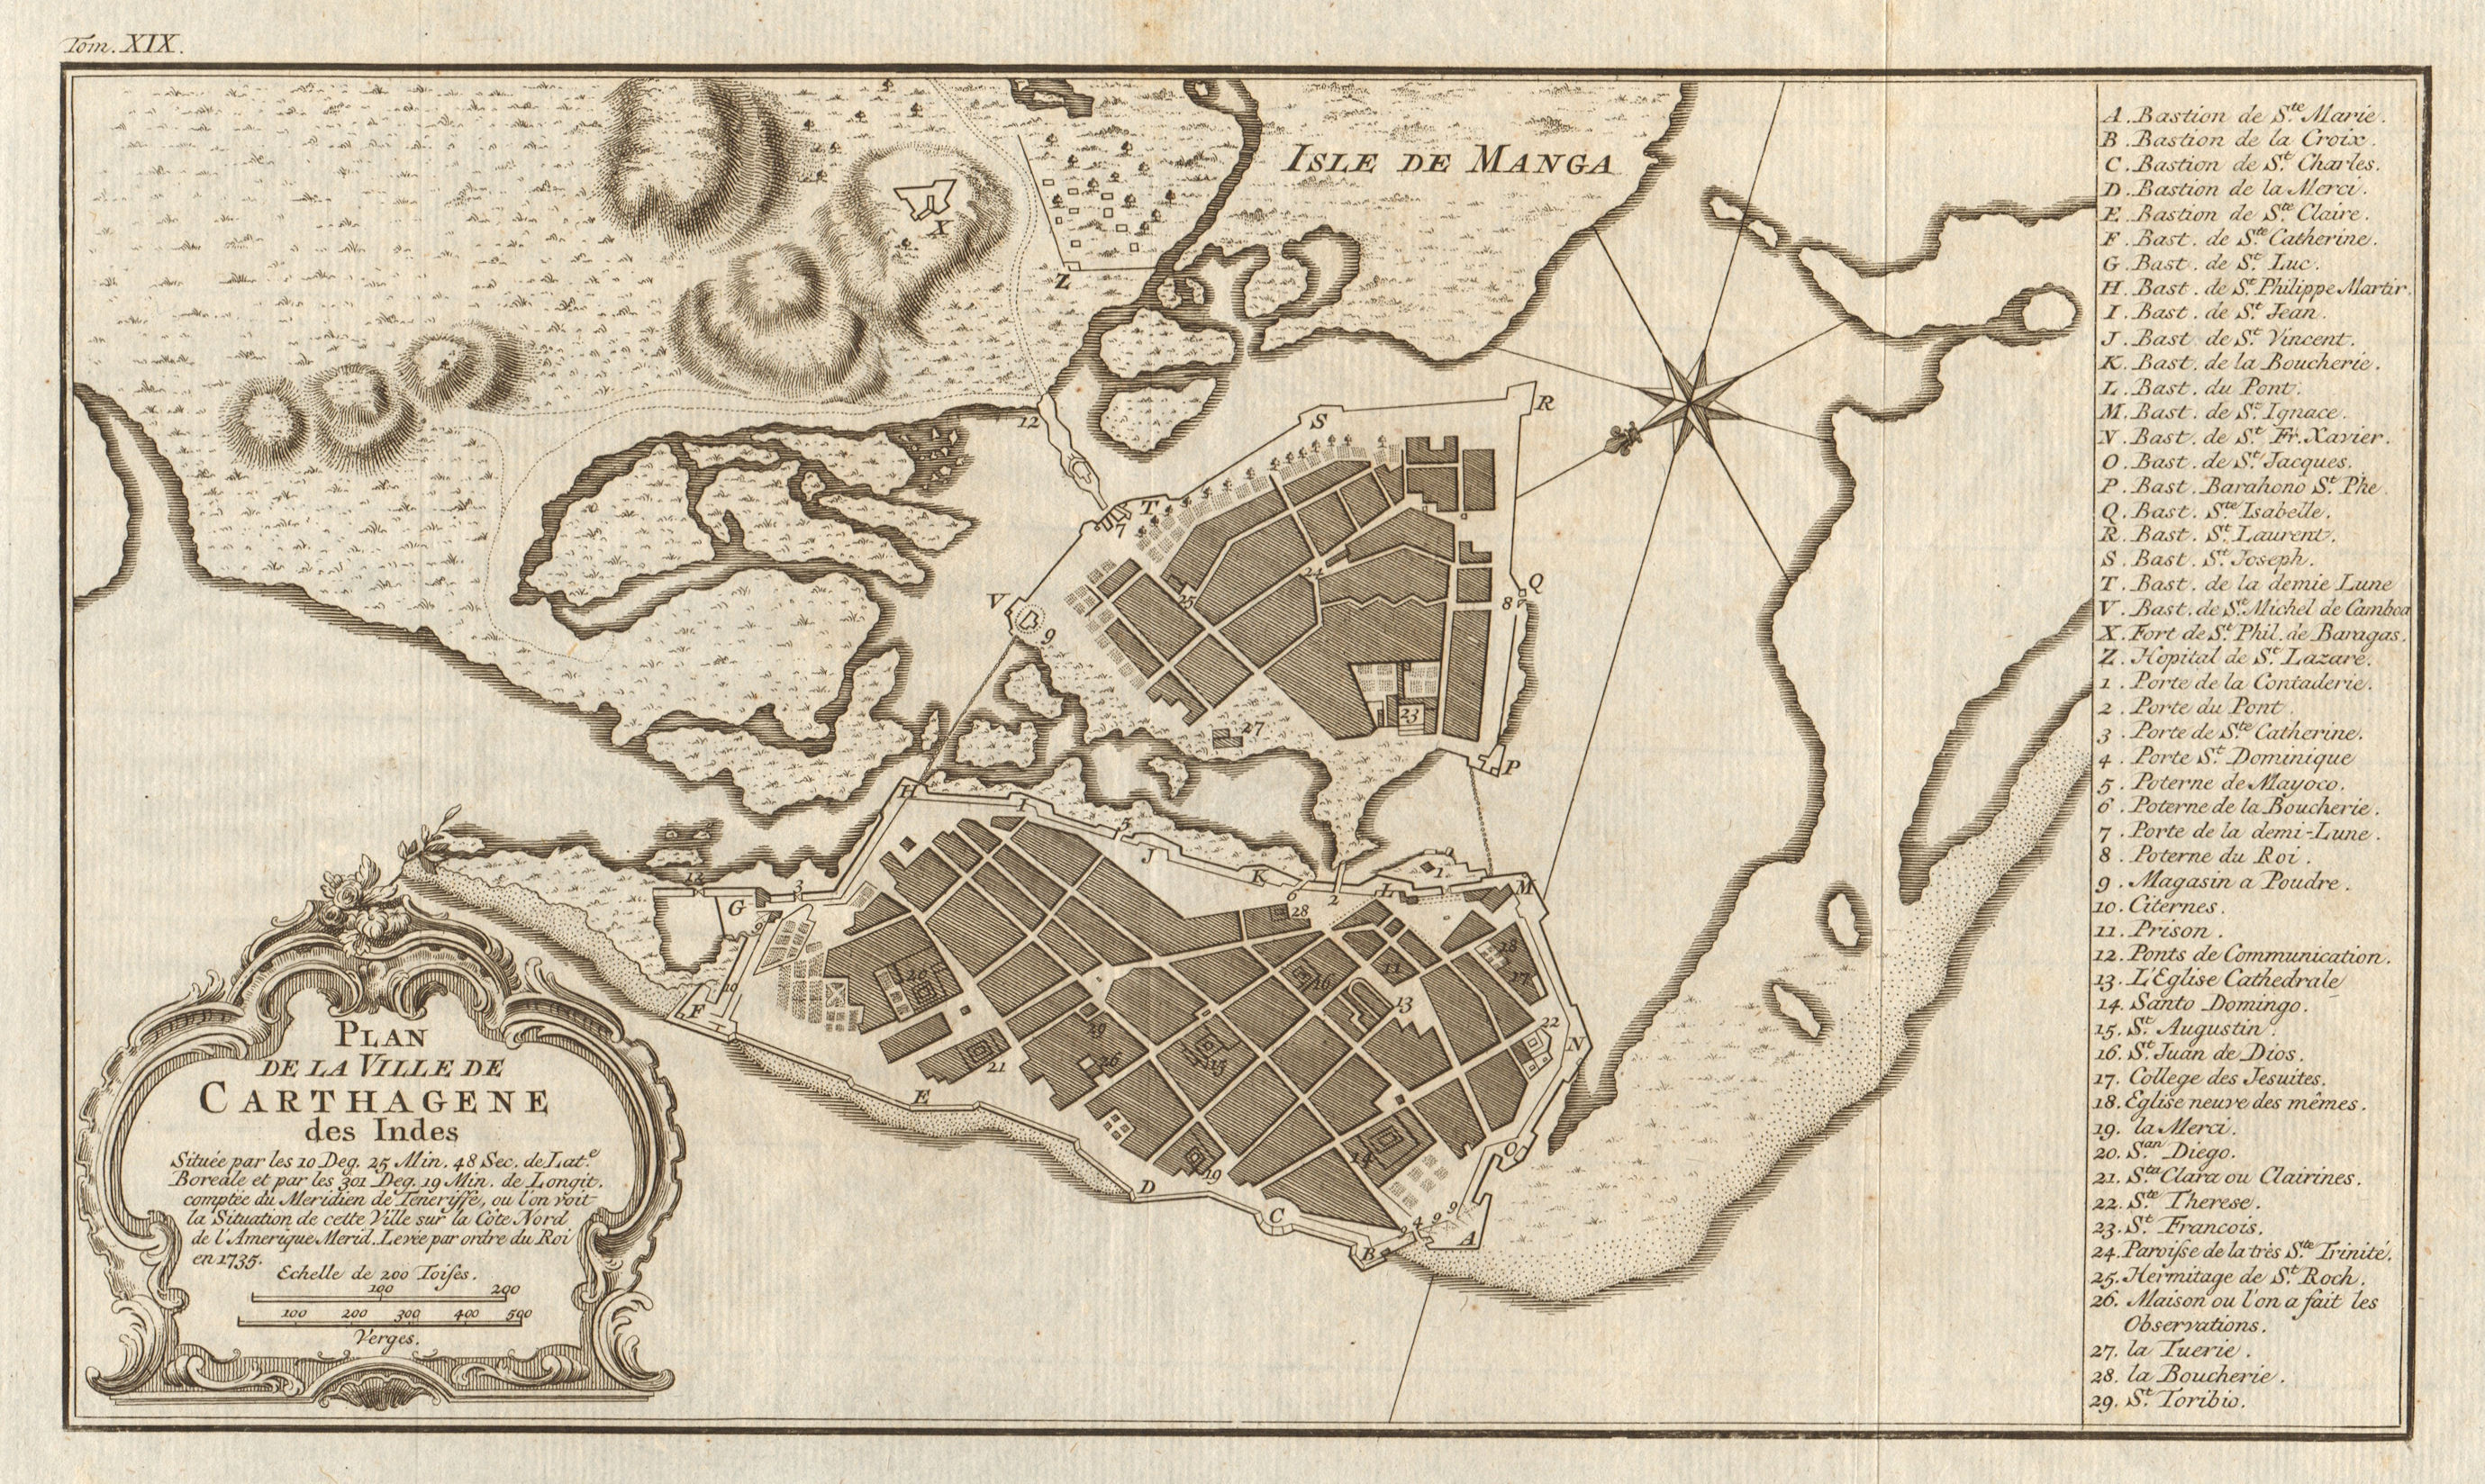 'Carthagene des Indes'. Cartagena de Indias, Colombia. BELLIN/SCHLEY 1772 map